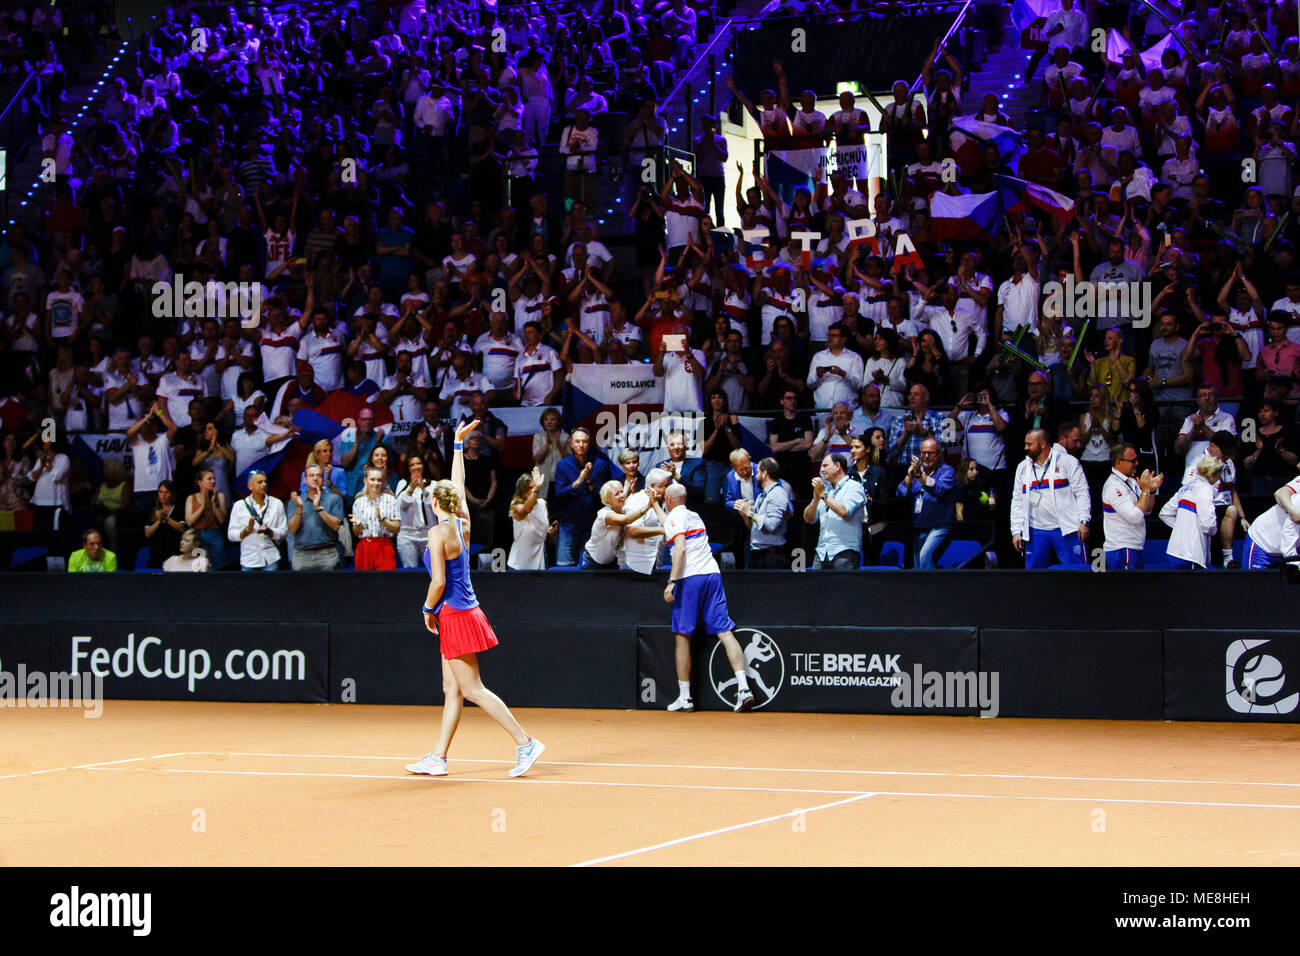 Tschechische Tennisspieler Petra Kvitova in Aktion während der Fed Cup Halbfinale gegen Deutschland. Stockfoto